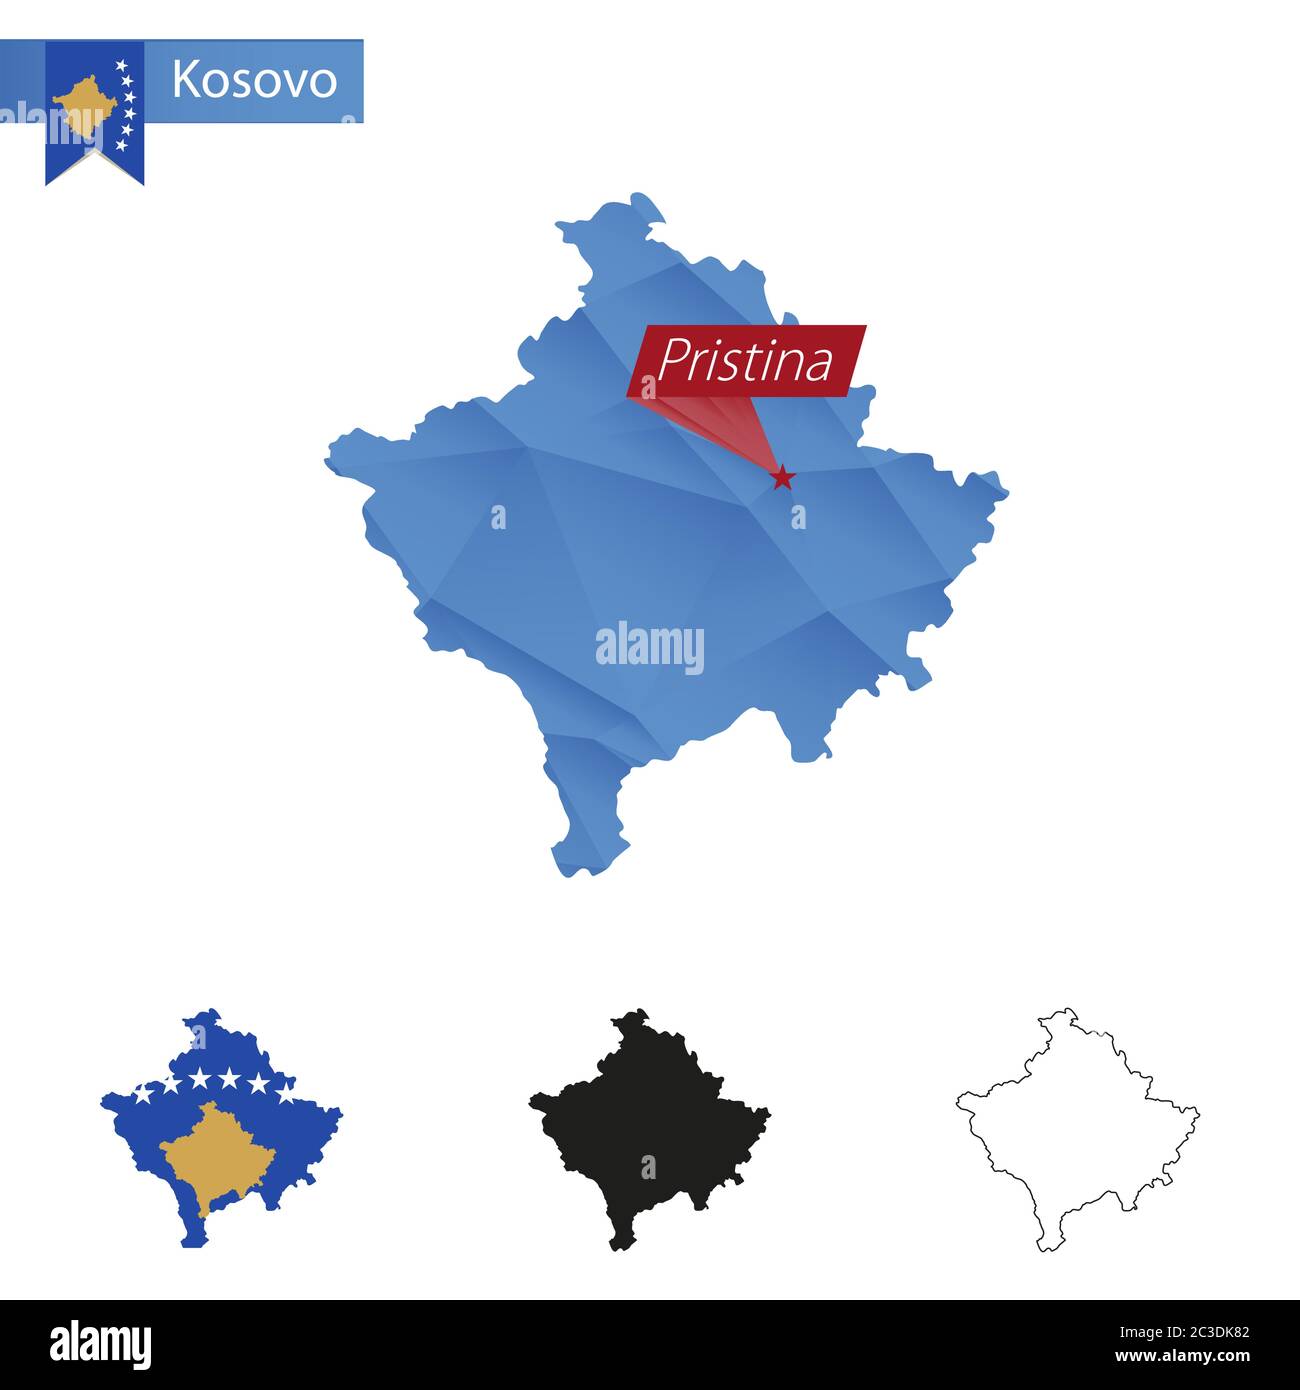 Mappa blu del Kosovo Low Poly con Pristina capitale, quattro versioni di mappa. Illustrazione vettoriale. Illustrazione Vettoriale